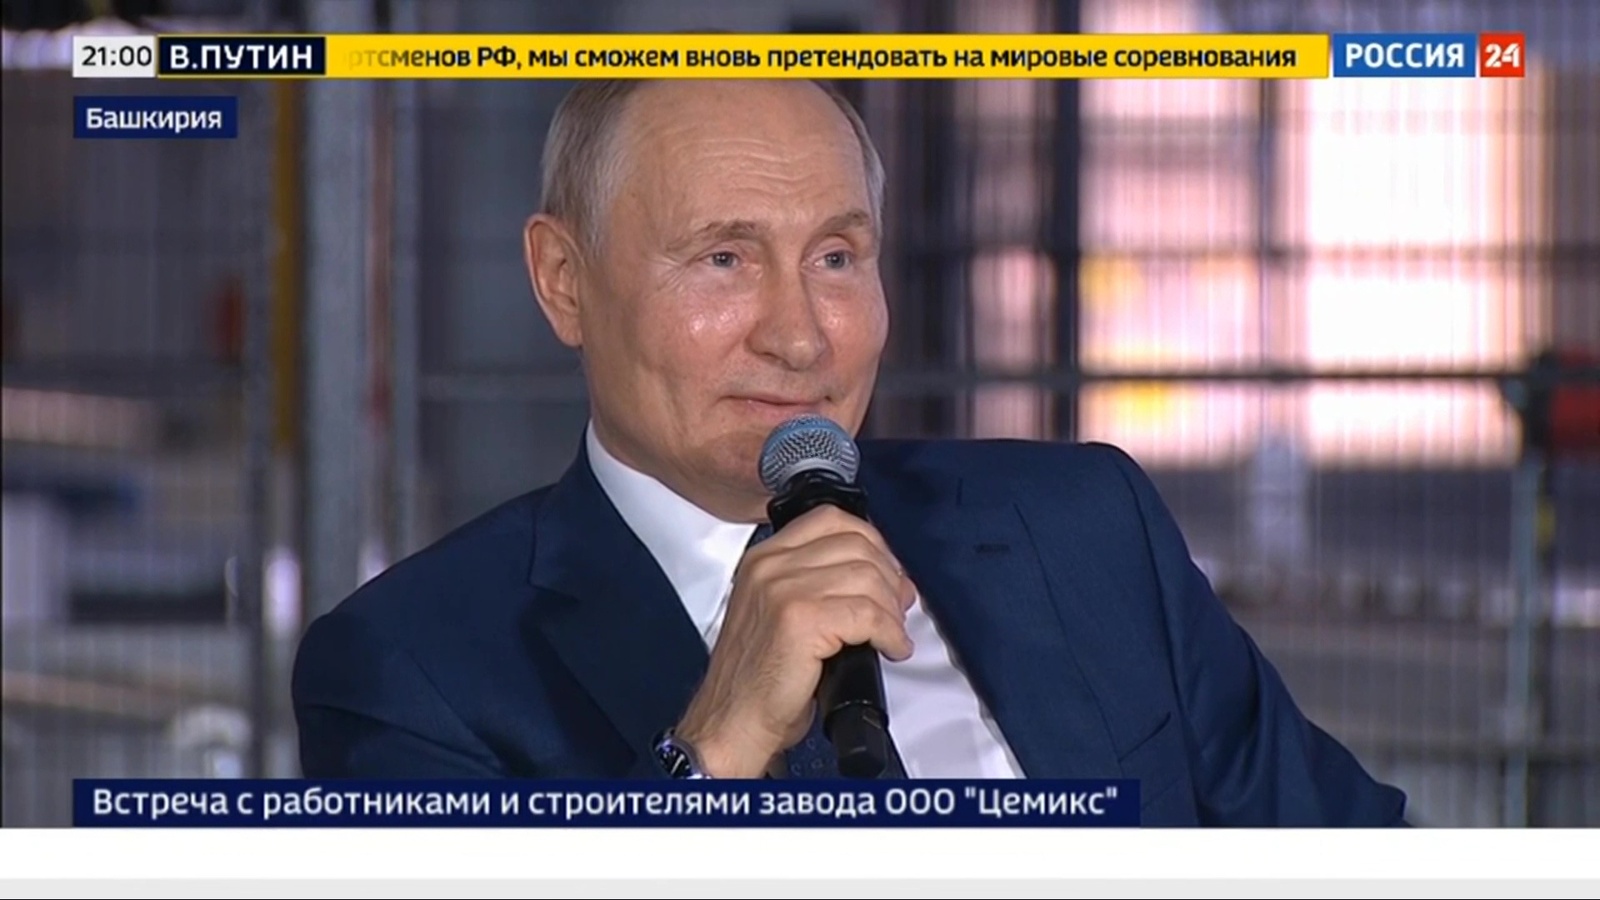 Владимир Путин порекомендовал всем попробовать башкирский мед